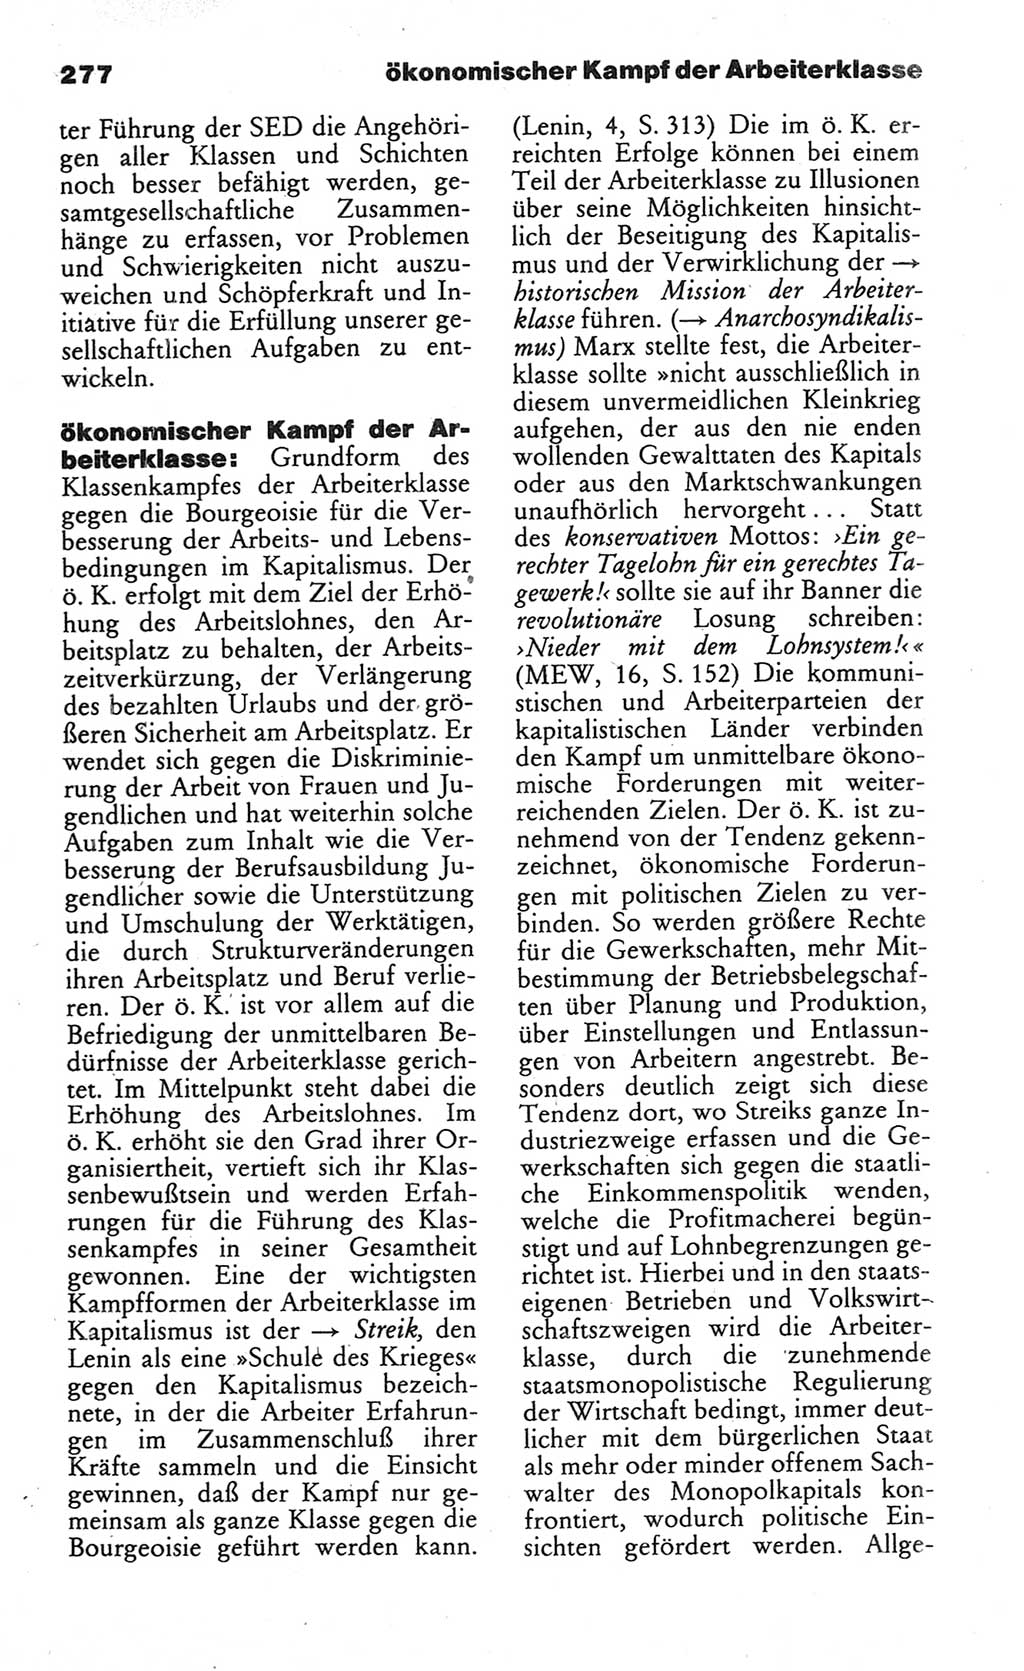 Wörterbuch des wissenschaftlichen Kommunismus [Deutsche Demokratische Republik (DDR)] 1984, Seite 277 (Wb. wiss. Komm. DDR 1984, S. 277)